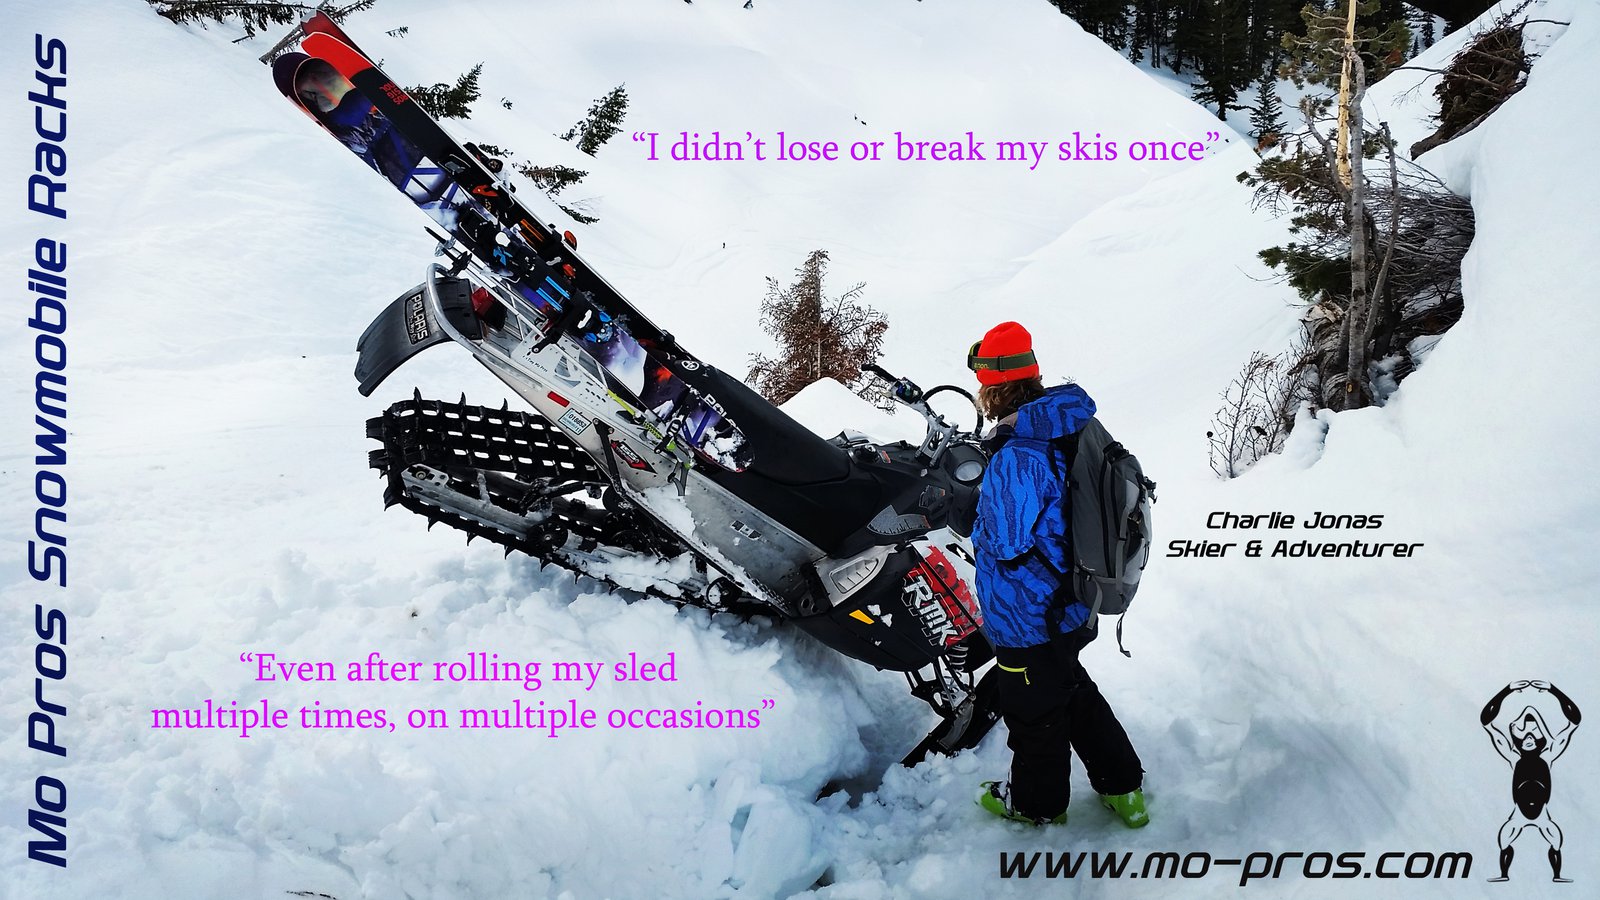 Mo Pros Snowmobile Ski Rack